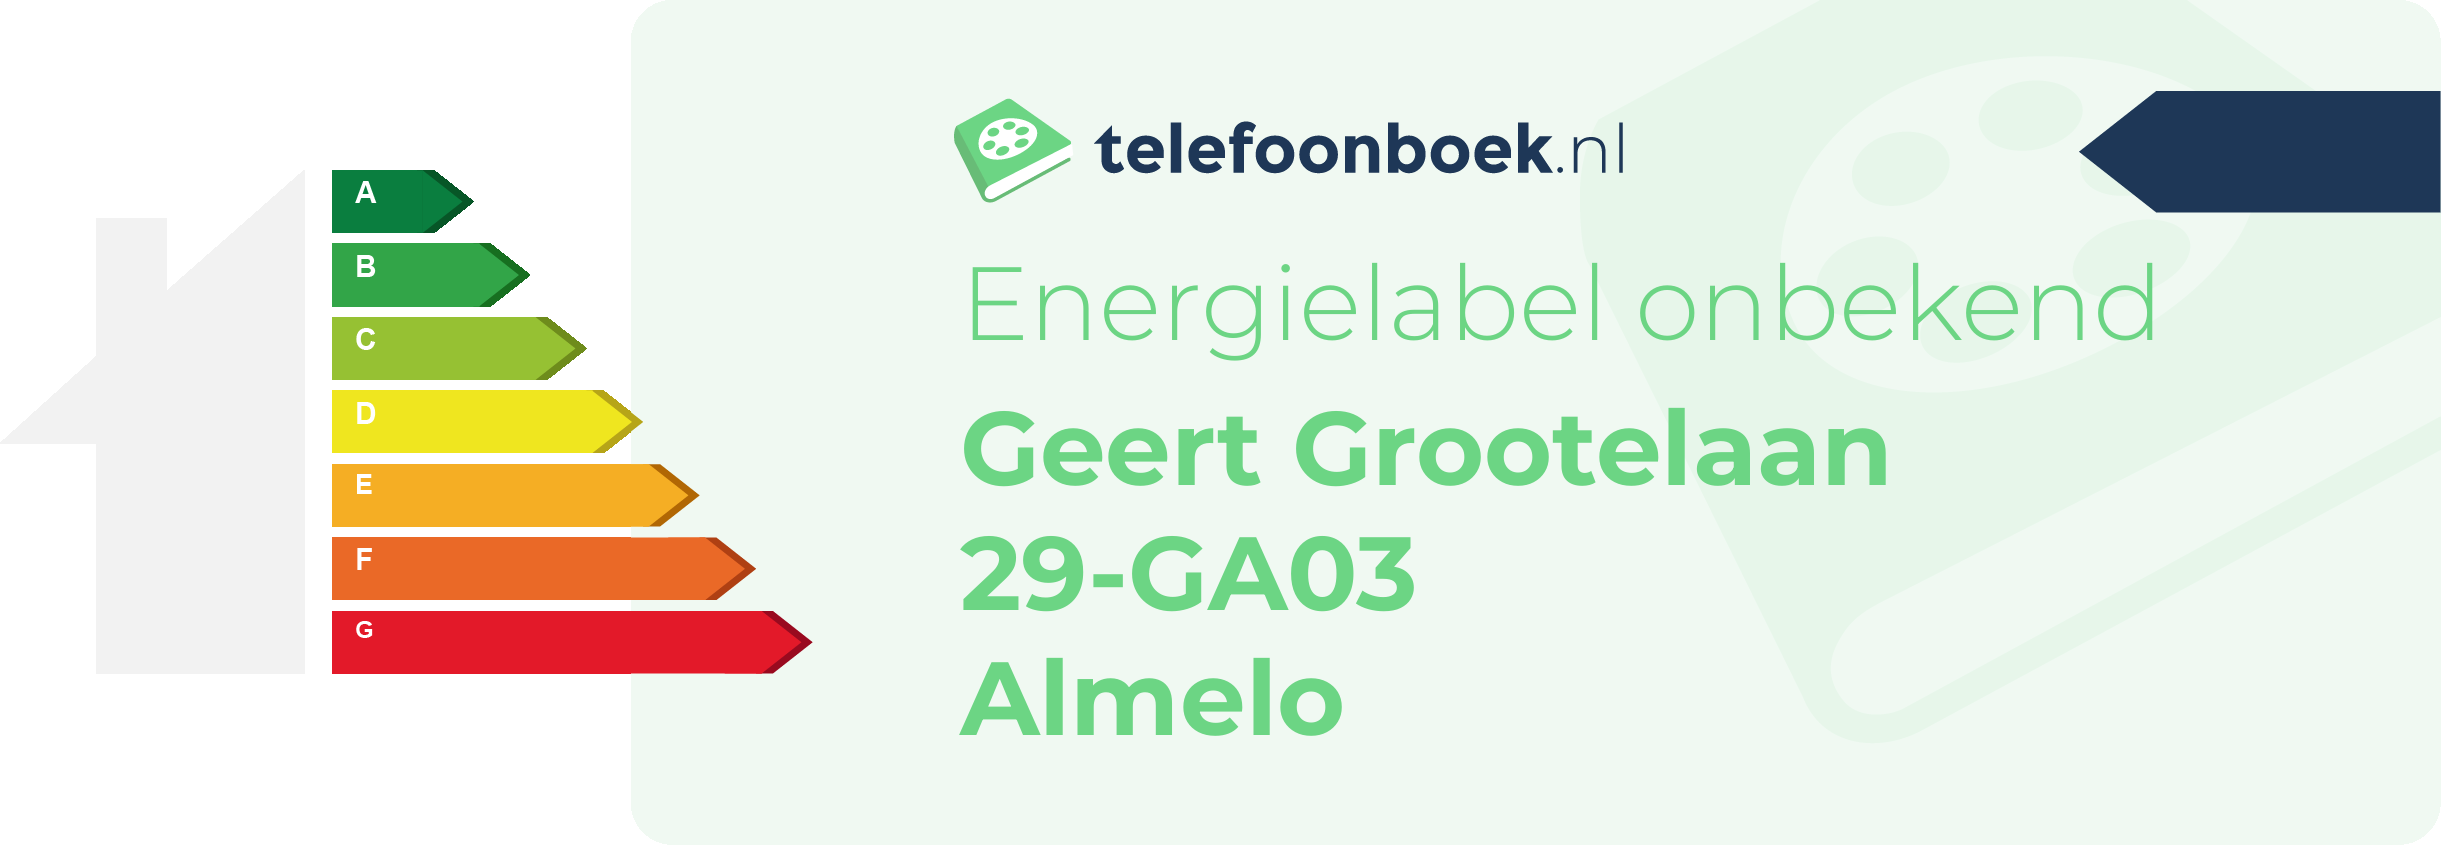 Energielabel Geert Grootelaan 29-GA03 Almelo